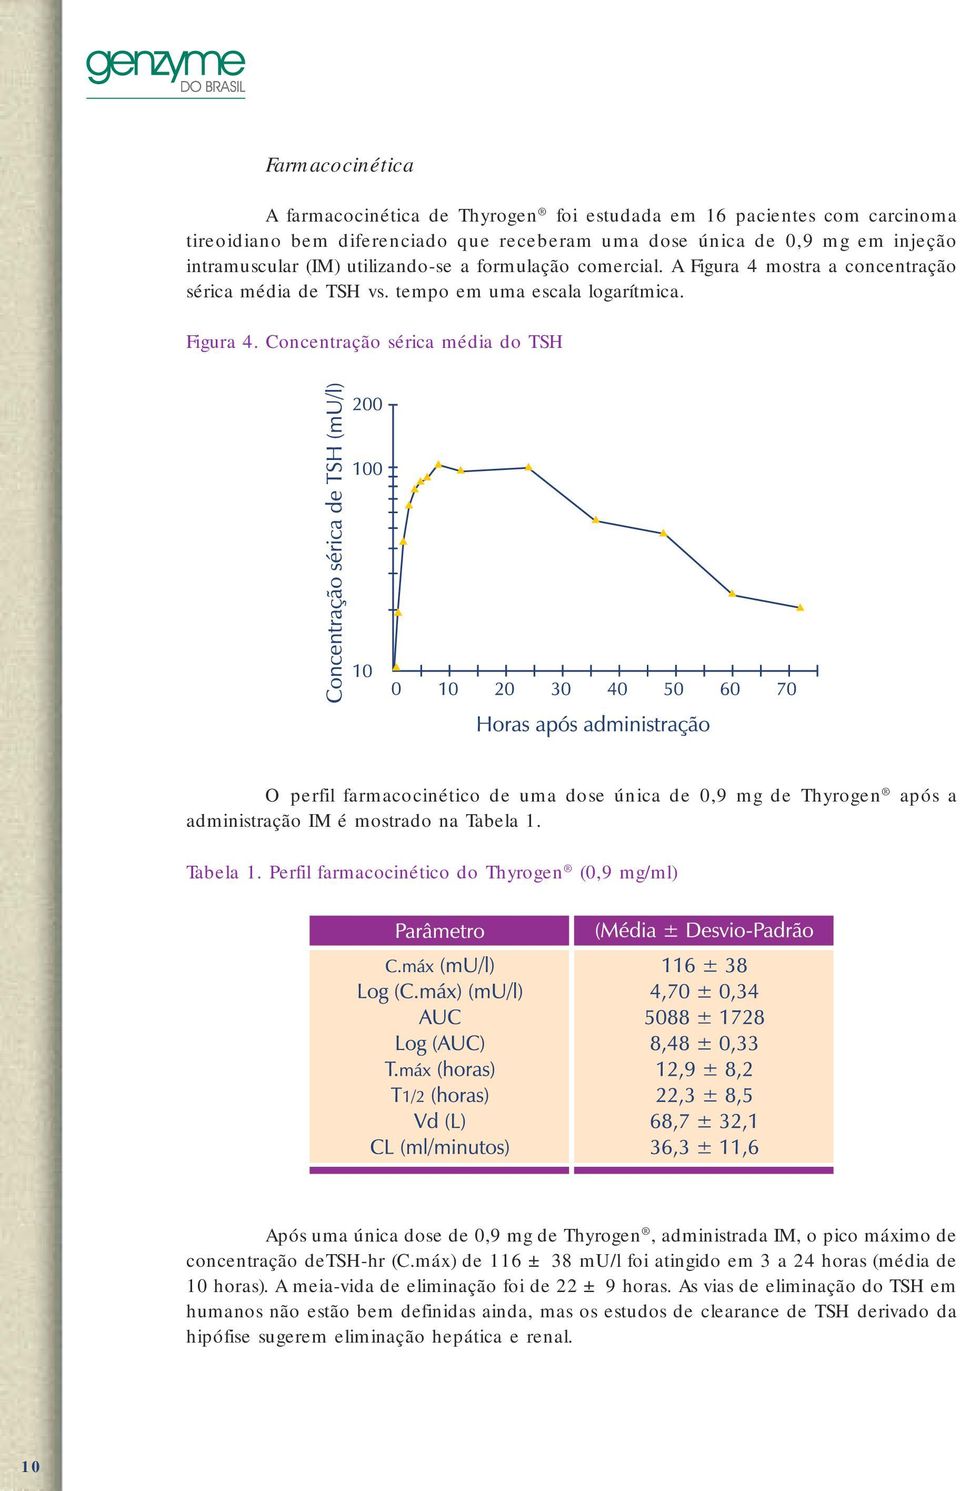 Tabela 1. Perfil farmacocinético do Thyrogen (0,9 mg/ml) Após uma única dose de 0,9 mg de Thyrogen, administrada IM, o pico máximo de concentração detsh-hr (C.